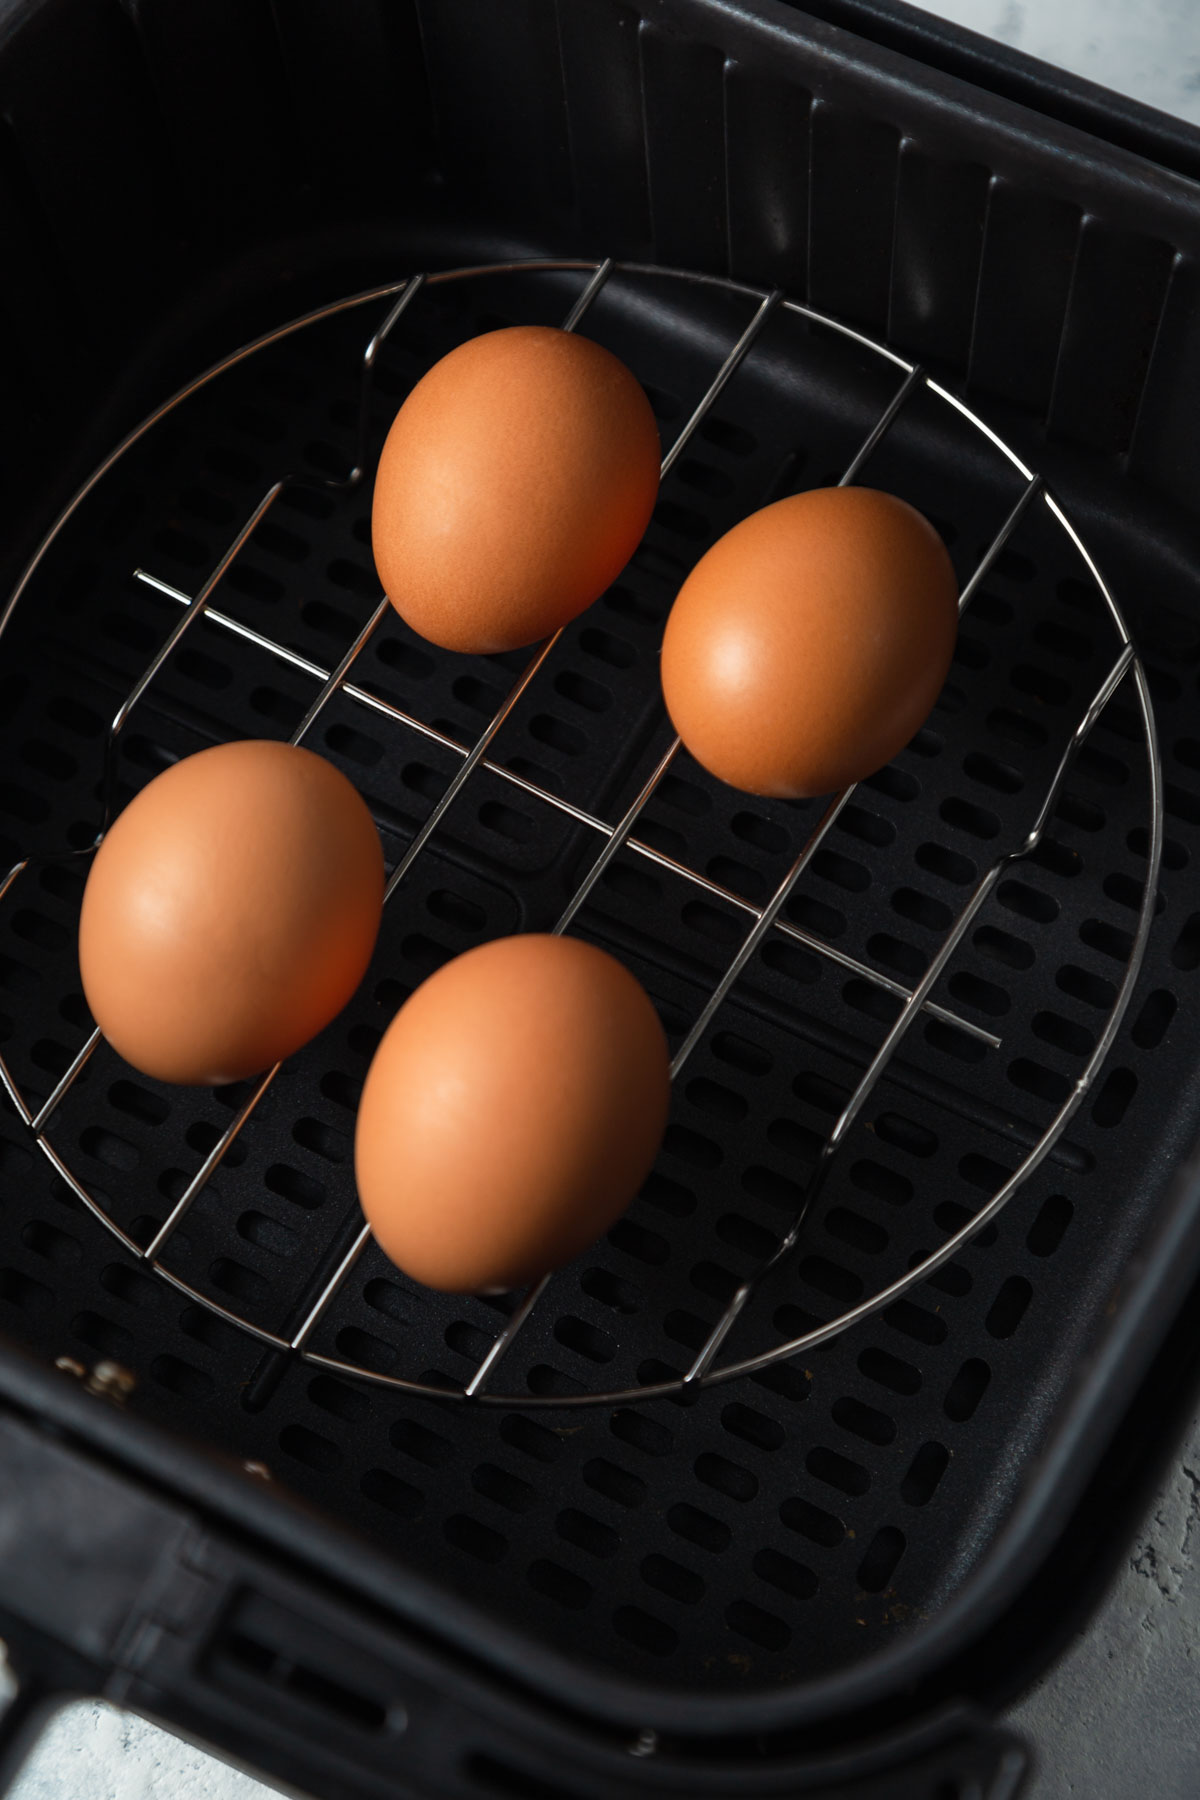 eggs in the air fryer basket.